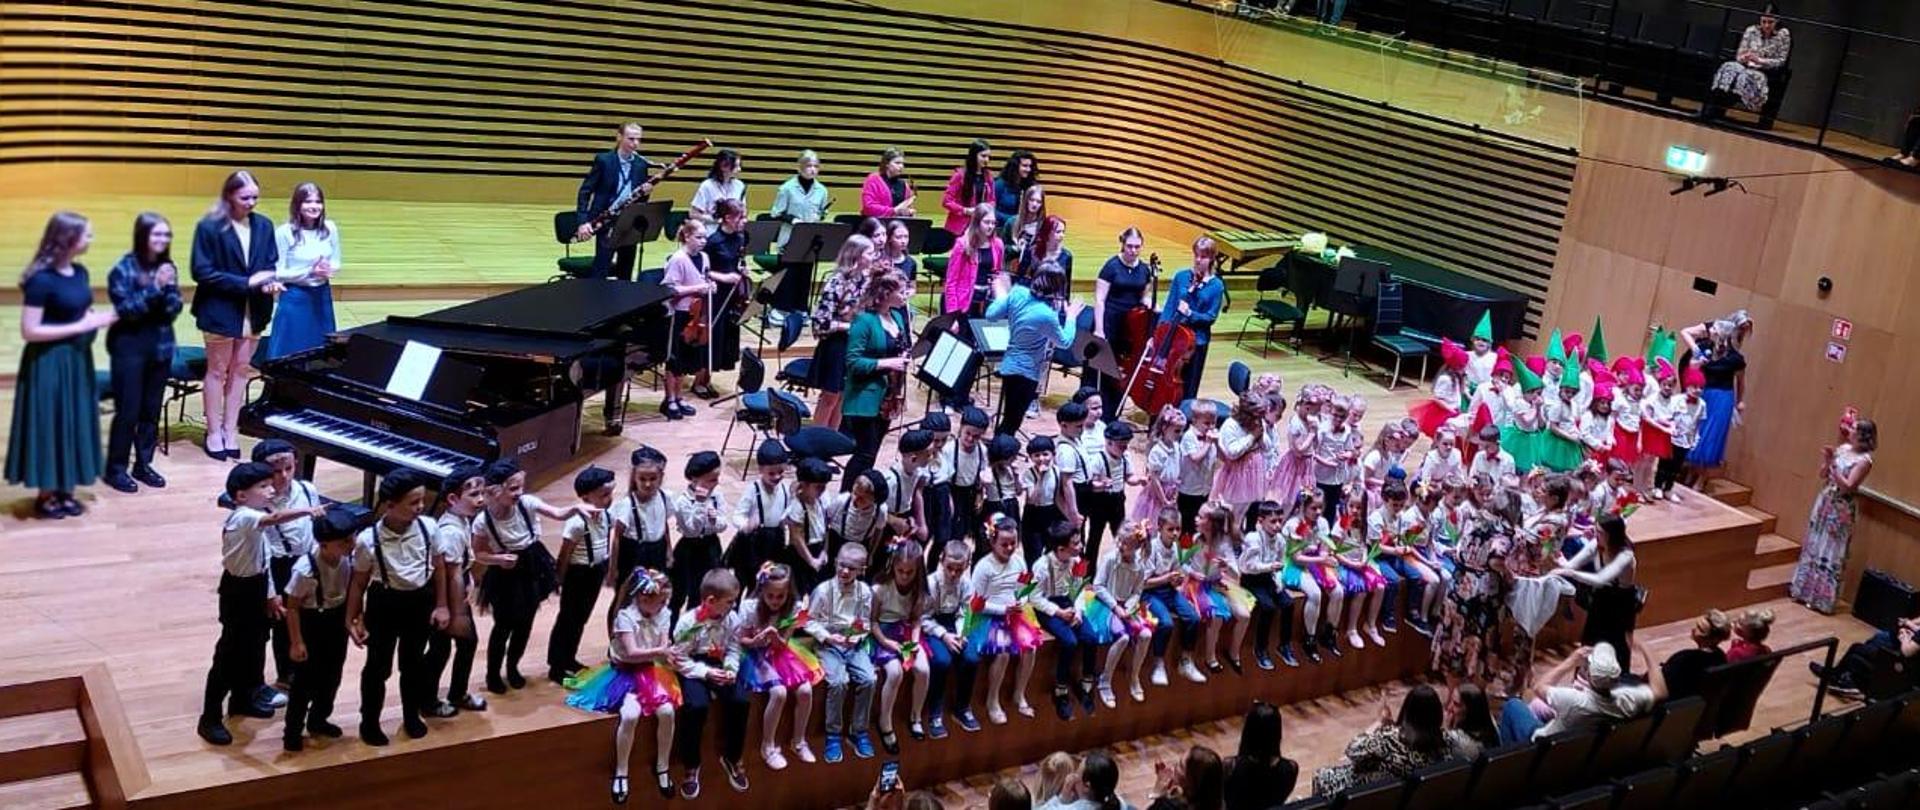 Około 90 dzieci siedzi i stoi w dwóch rzędach na estradzie, za nimi stoją muzycy orkiestry.